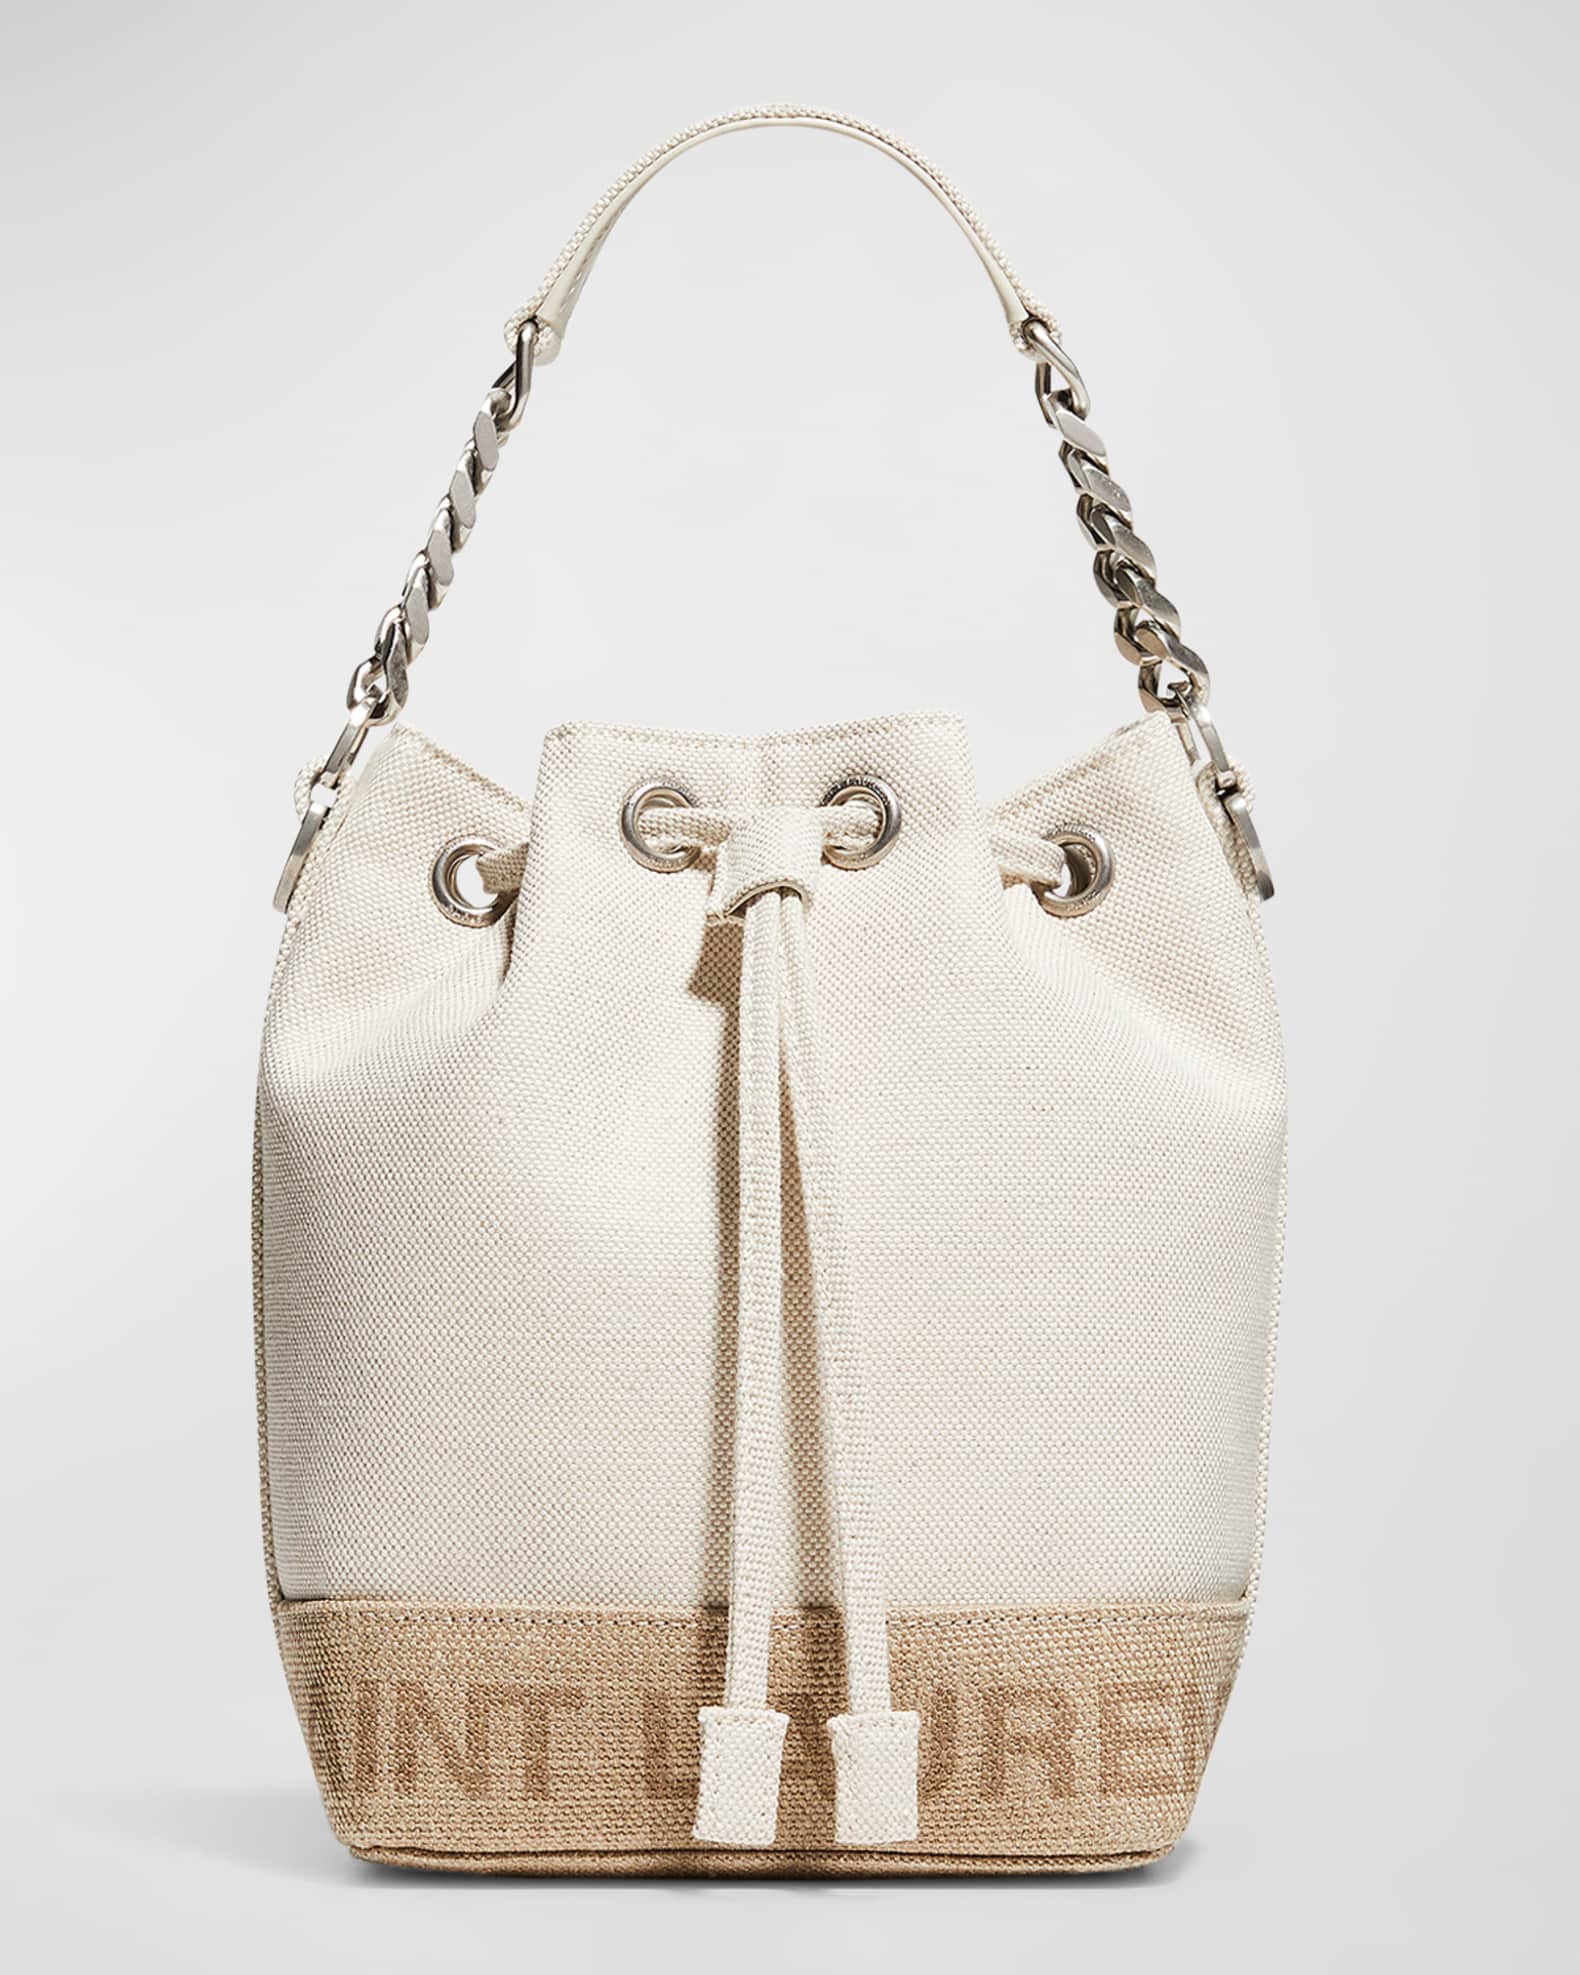 Saint Laurent Rive Gauche Small Bucket Bag in Canvas | Neiman Marcus